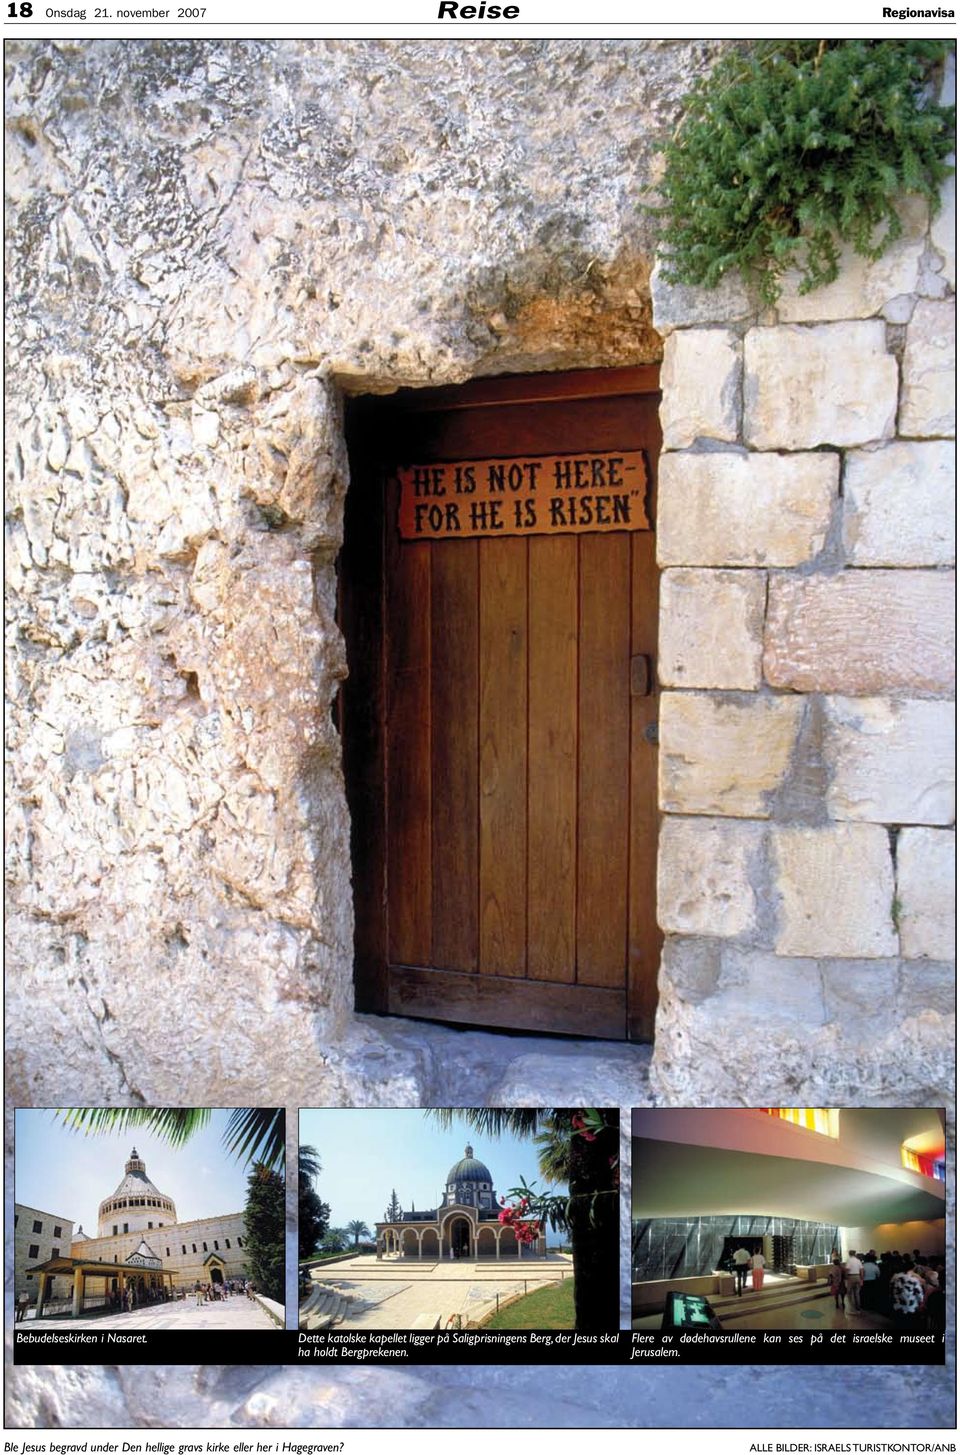 Bergprekenen. Flere av dødehavsrullene kan ses på det israelske museet i Jerusalem.